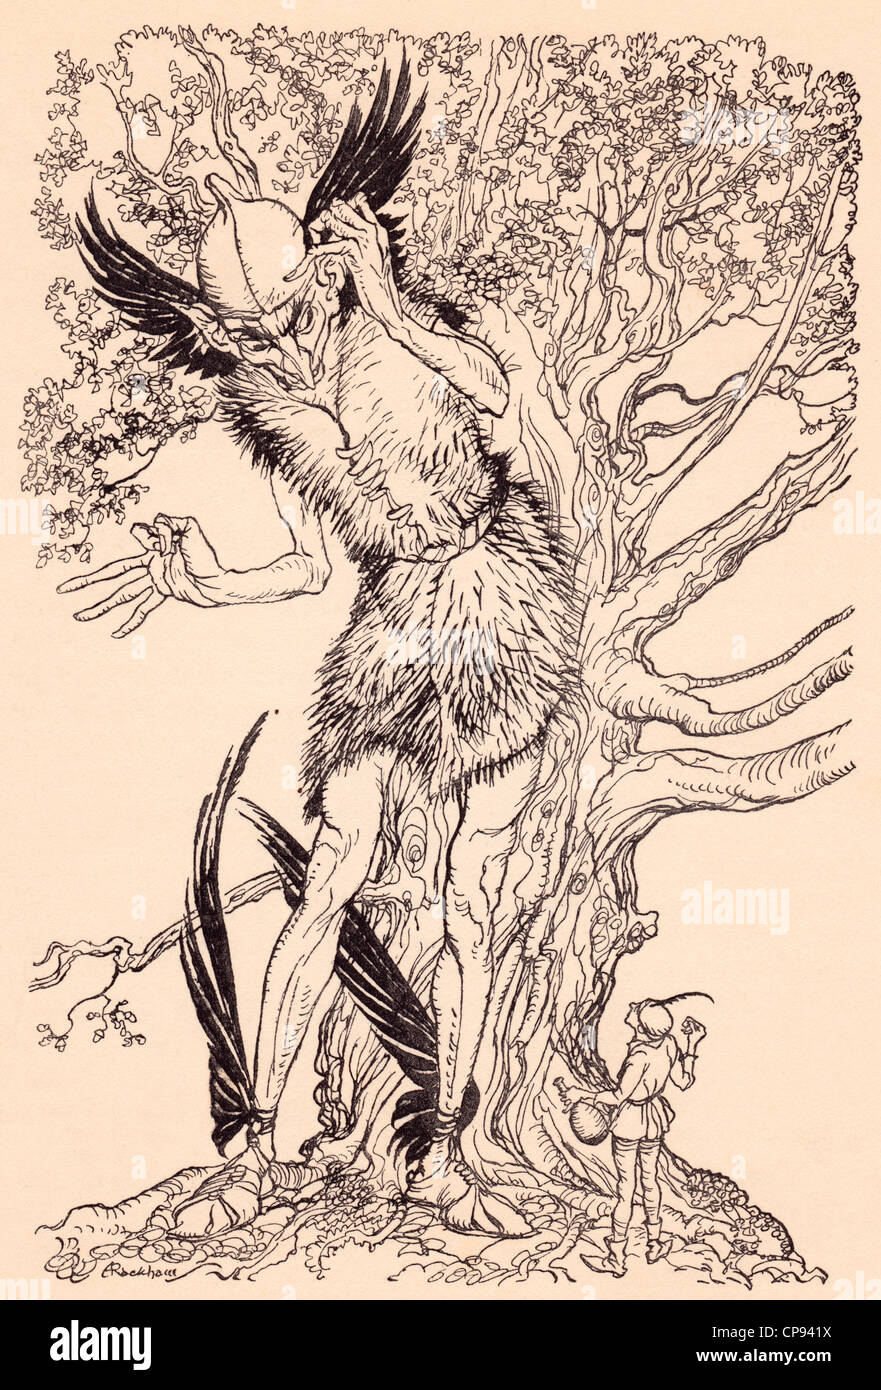 Eine schreckliche Kollegen halb so groß wie der Baum, er stand. Illustration von Arthur Rackham aus Grimms Märchen Stockfoto